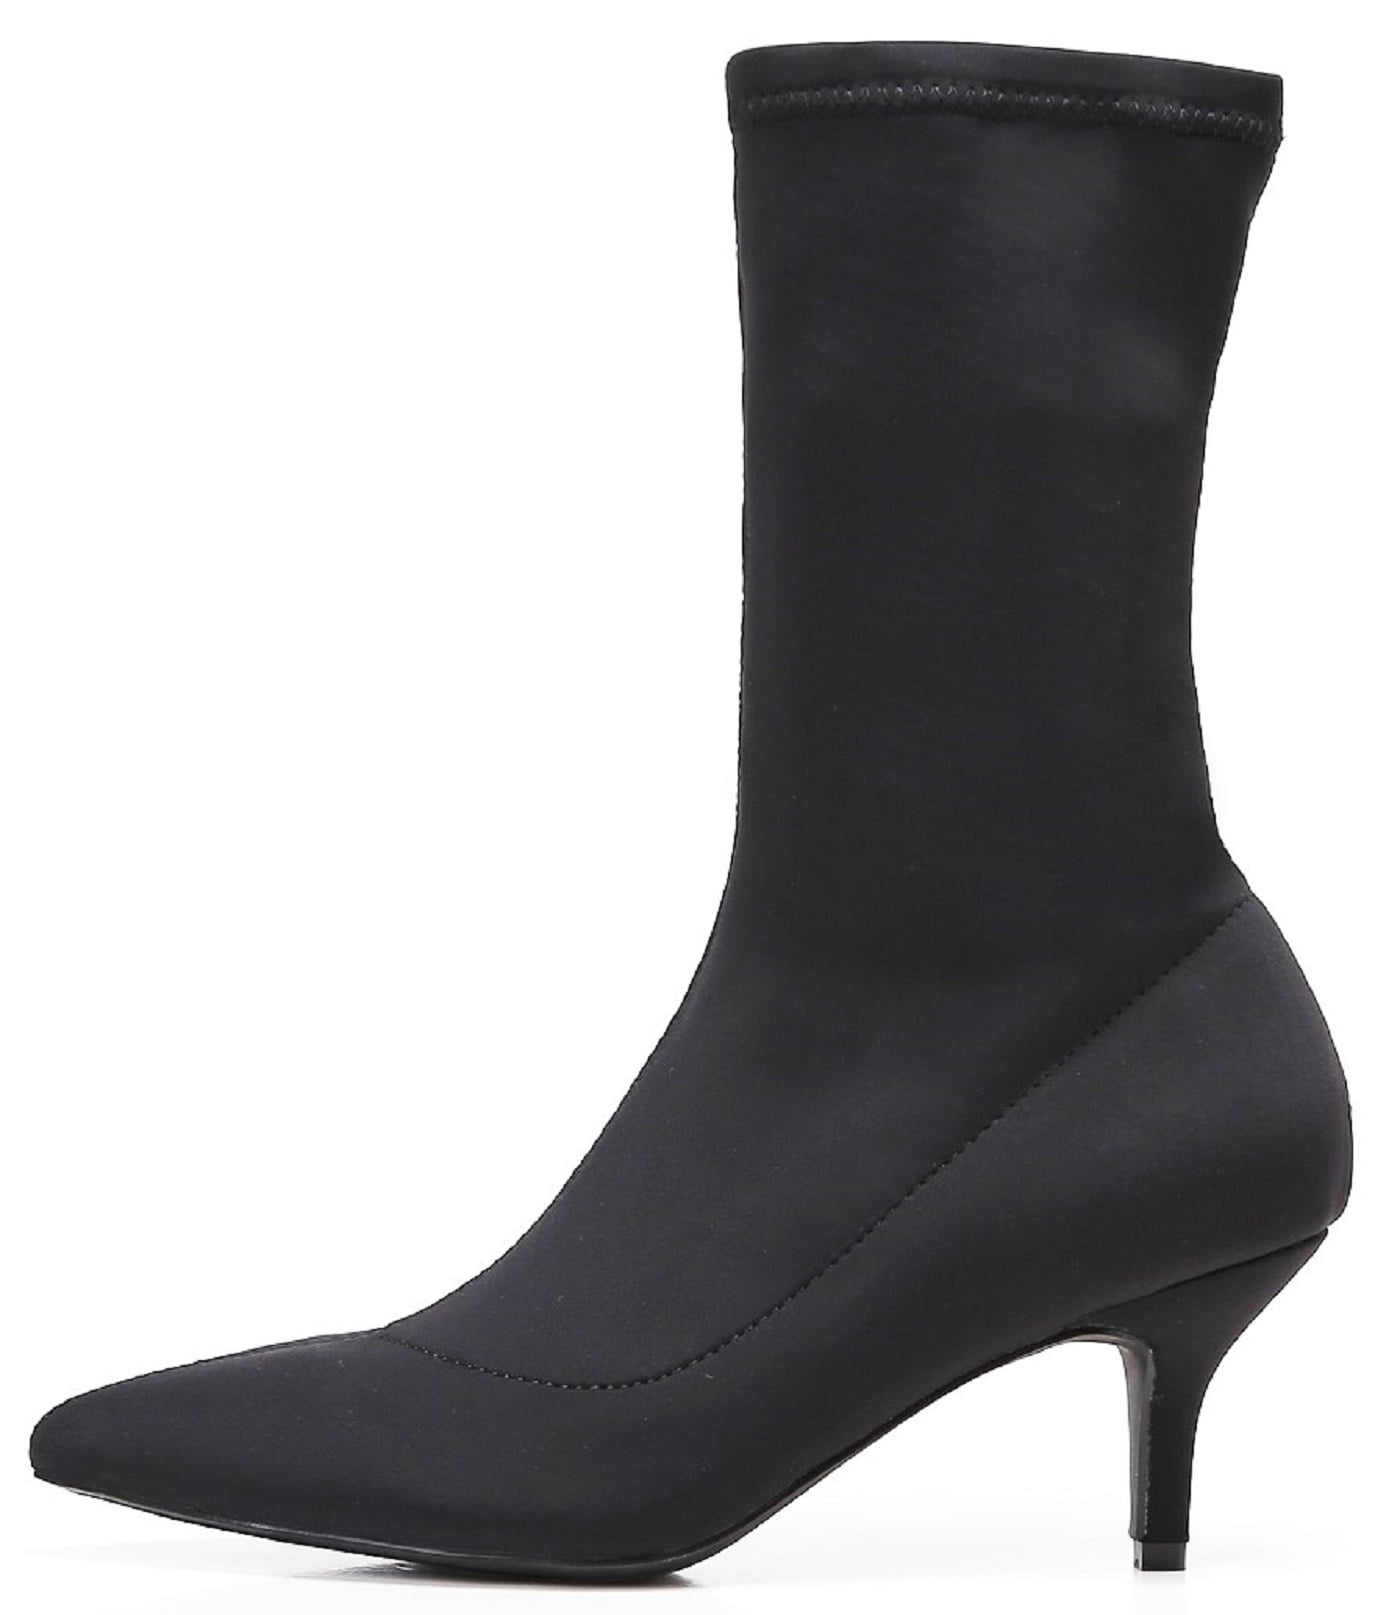 Buy > black boots with kitten heels > in stock